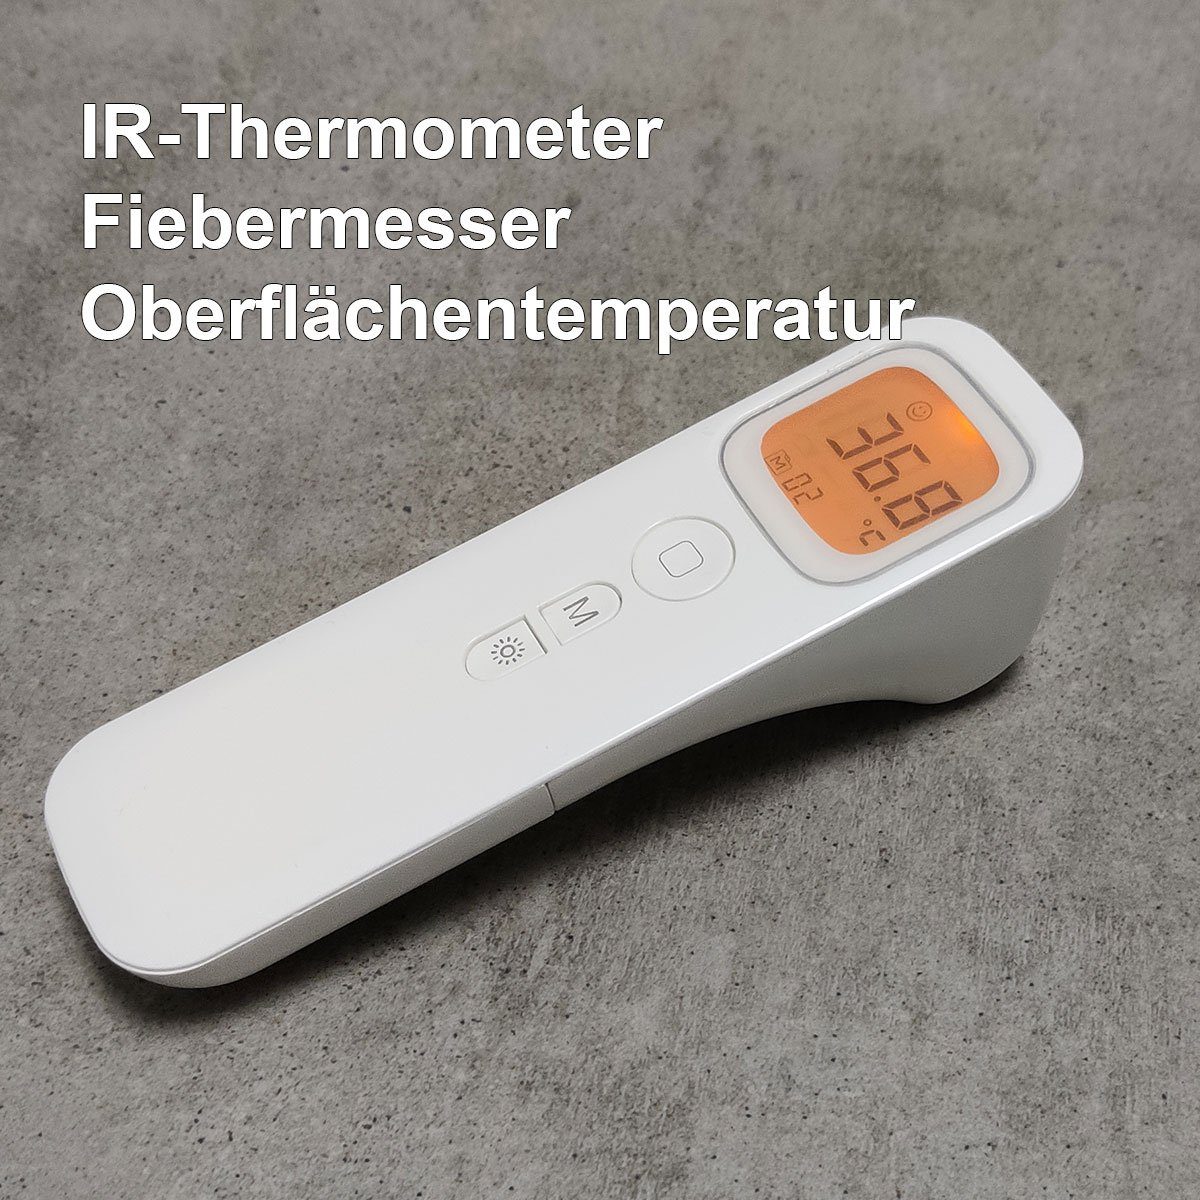 [Zu einem erstaunlichen Preis] Forca Infrarot-Fieberthermometer IR Thermometer Fieberthermometer Infrarot, Für alle Altersgruppen 1-tlg., geeignet Temperaturmessung